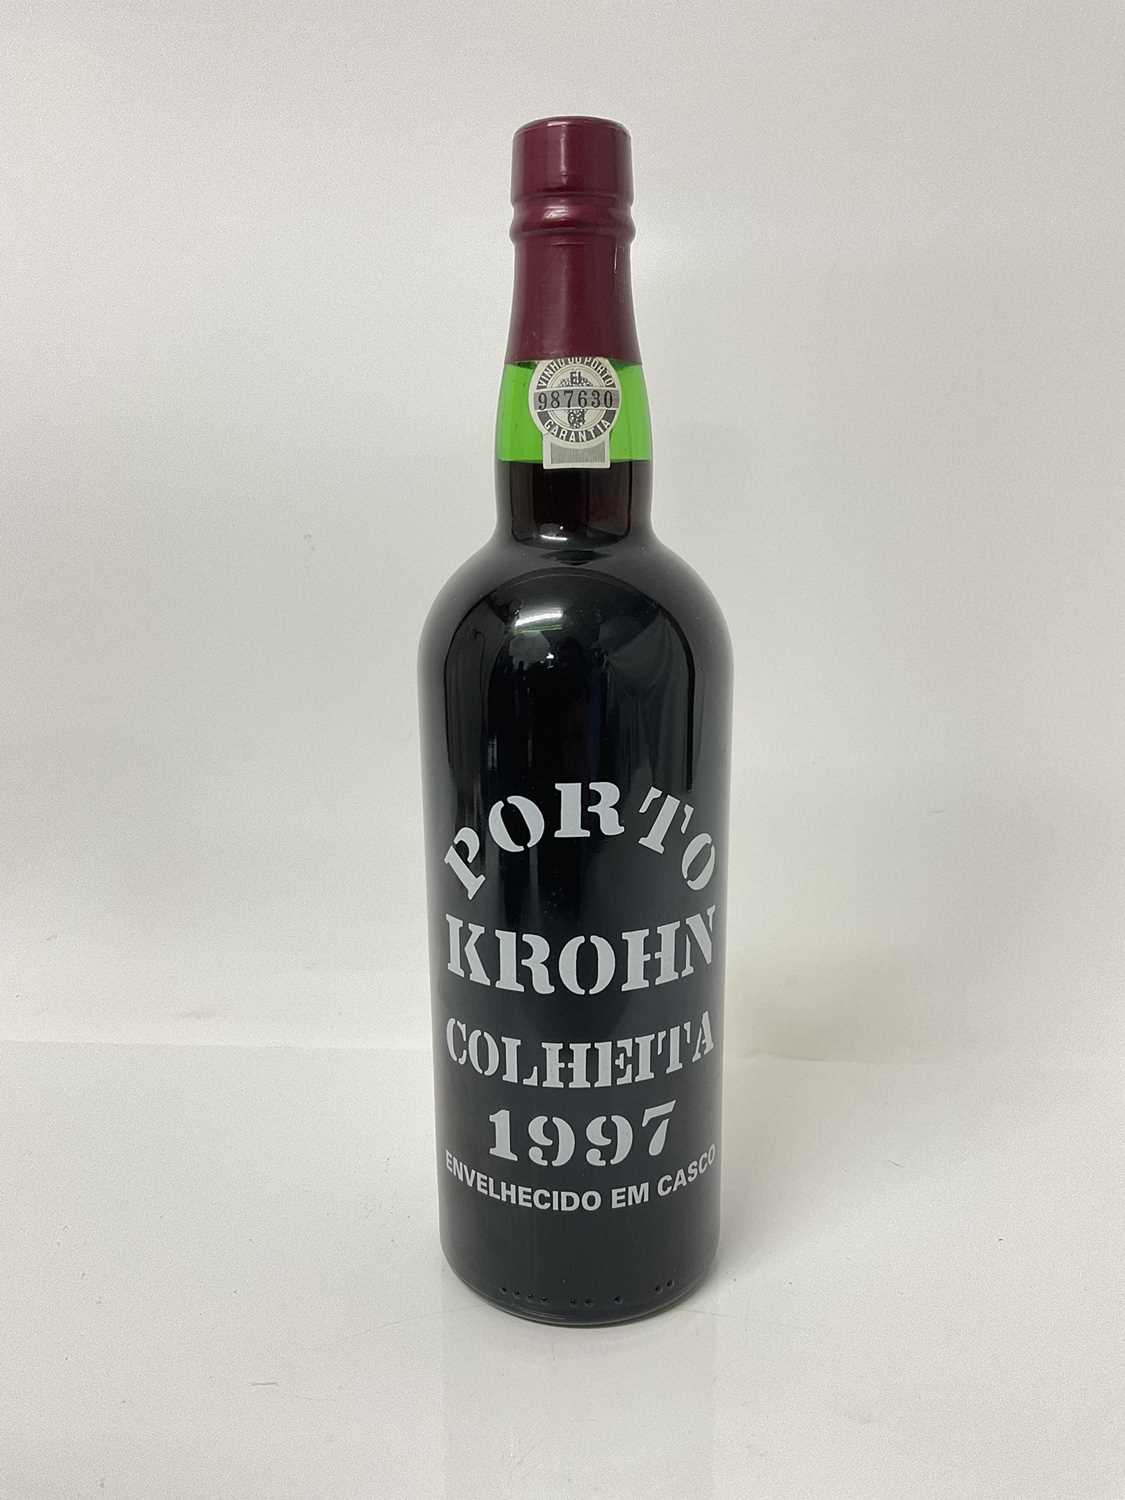 Lot 5 - Port - one bottle, Porto Krohn Colheita 1997